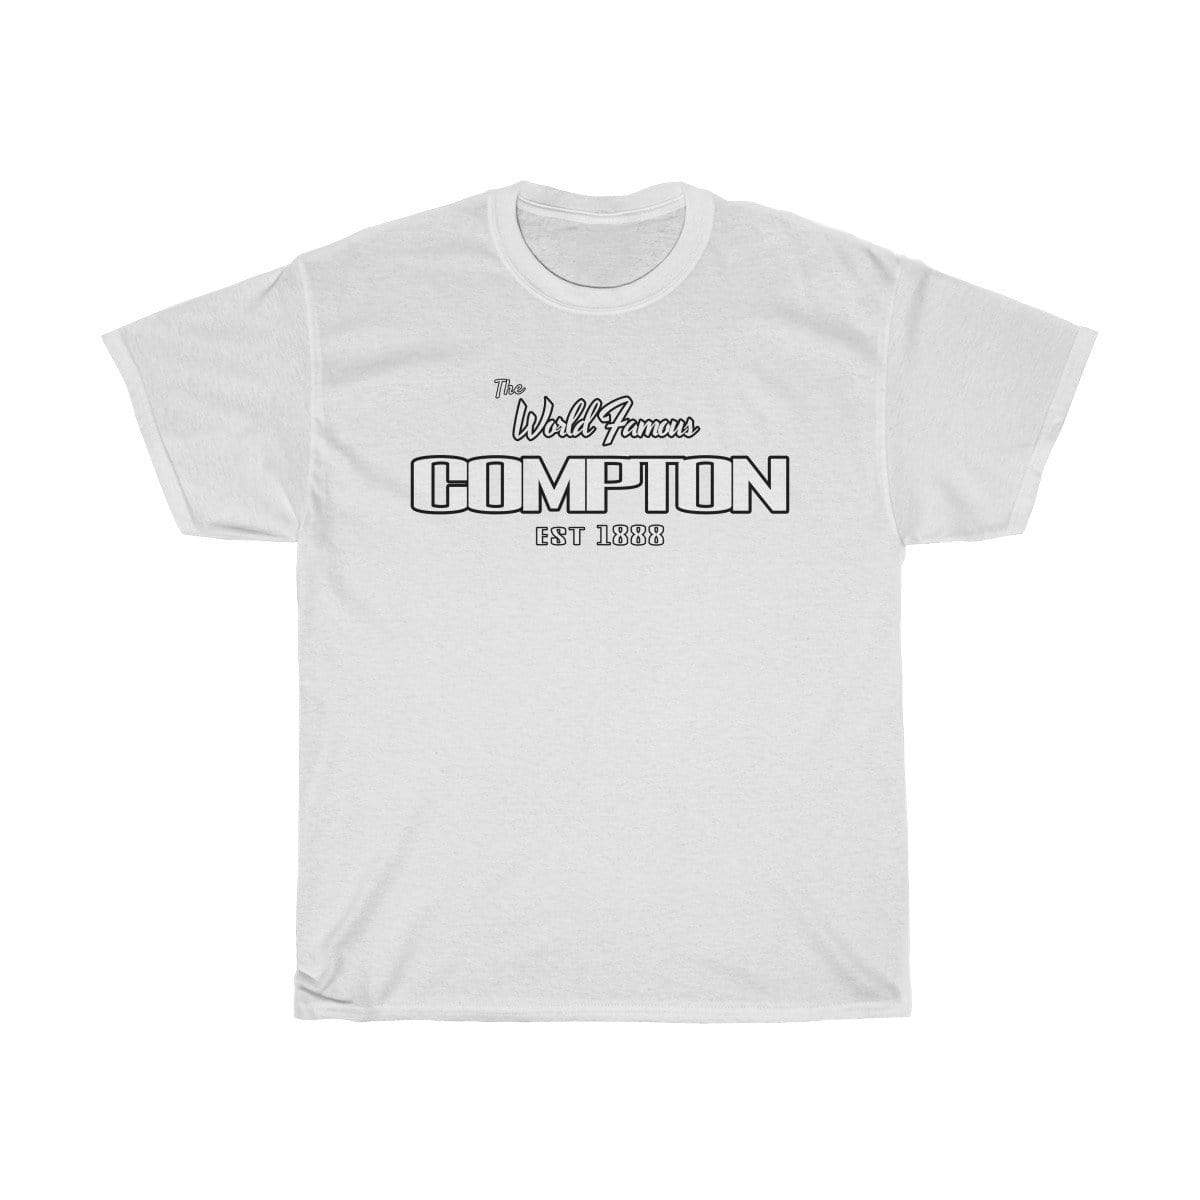 Plumskum T-Shirt White / S World Famous Compton EST. 1888 T-Shirt